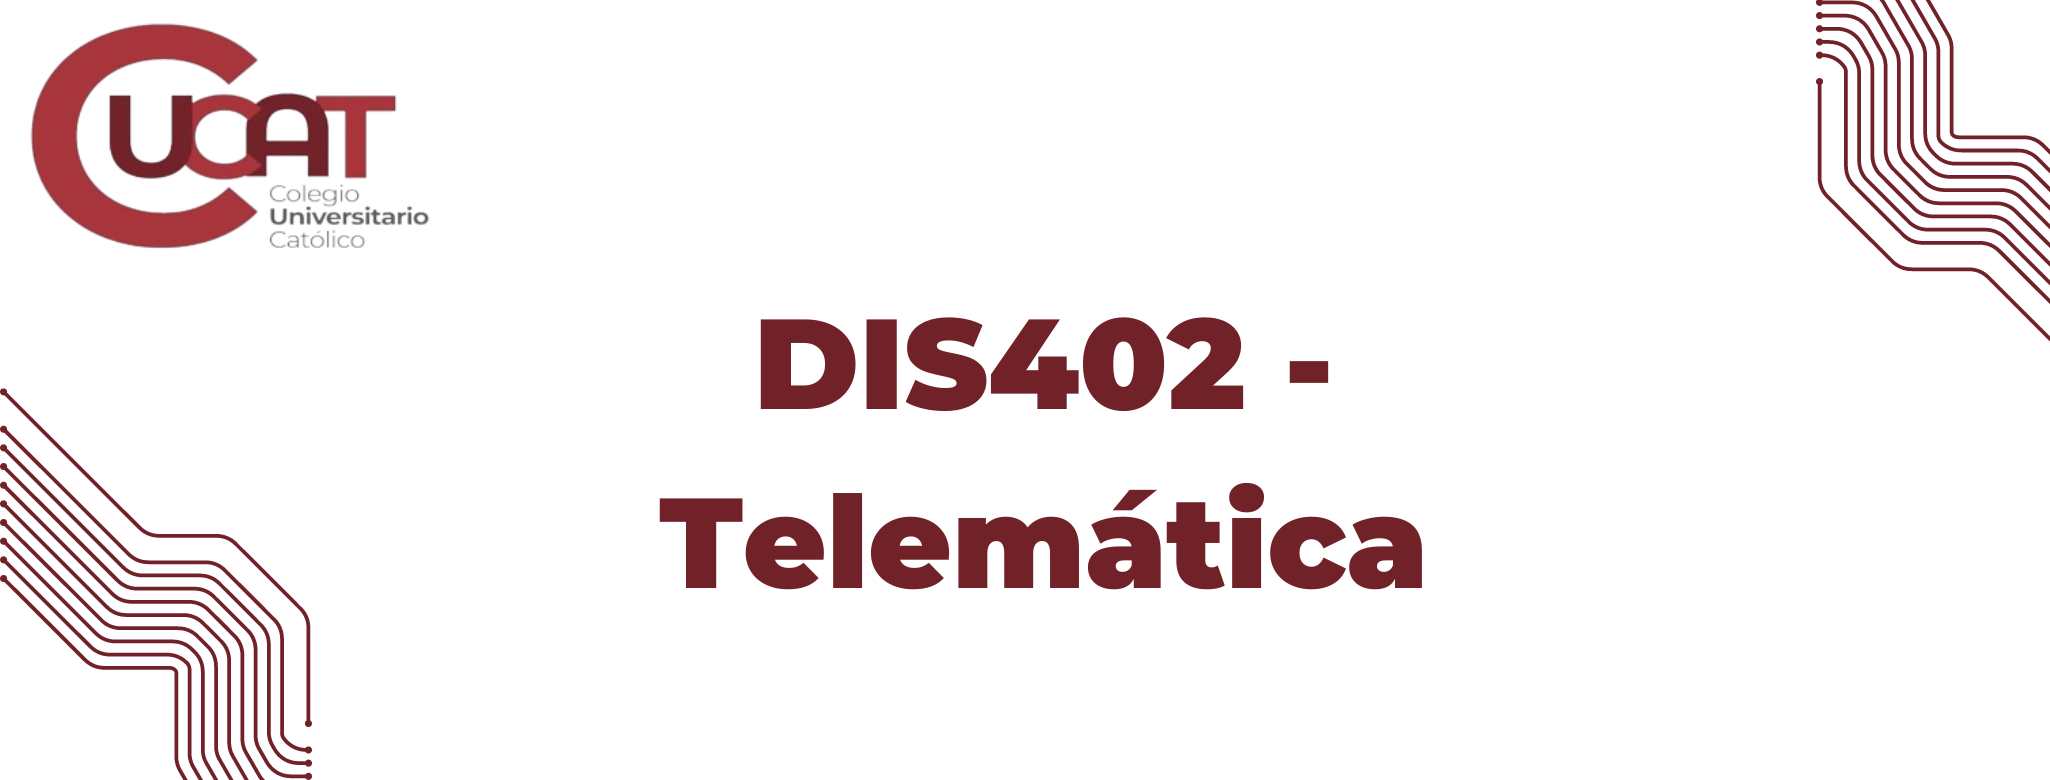 DIS402 -Telemática